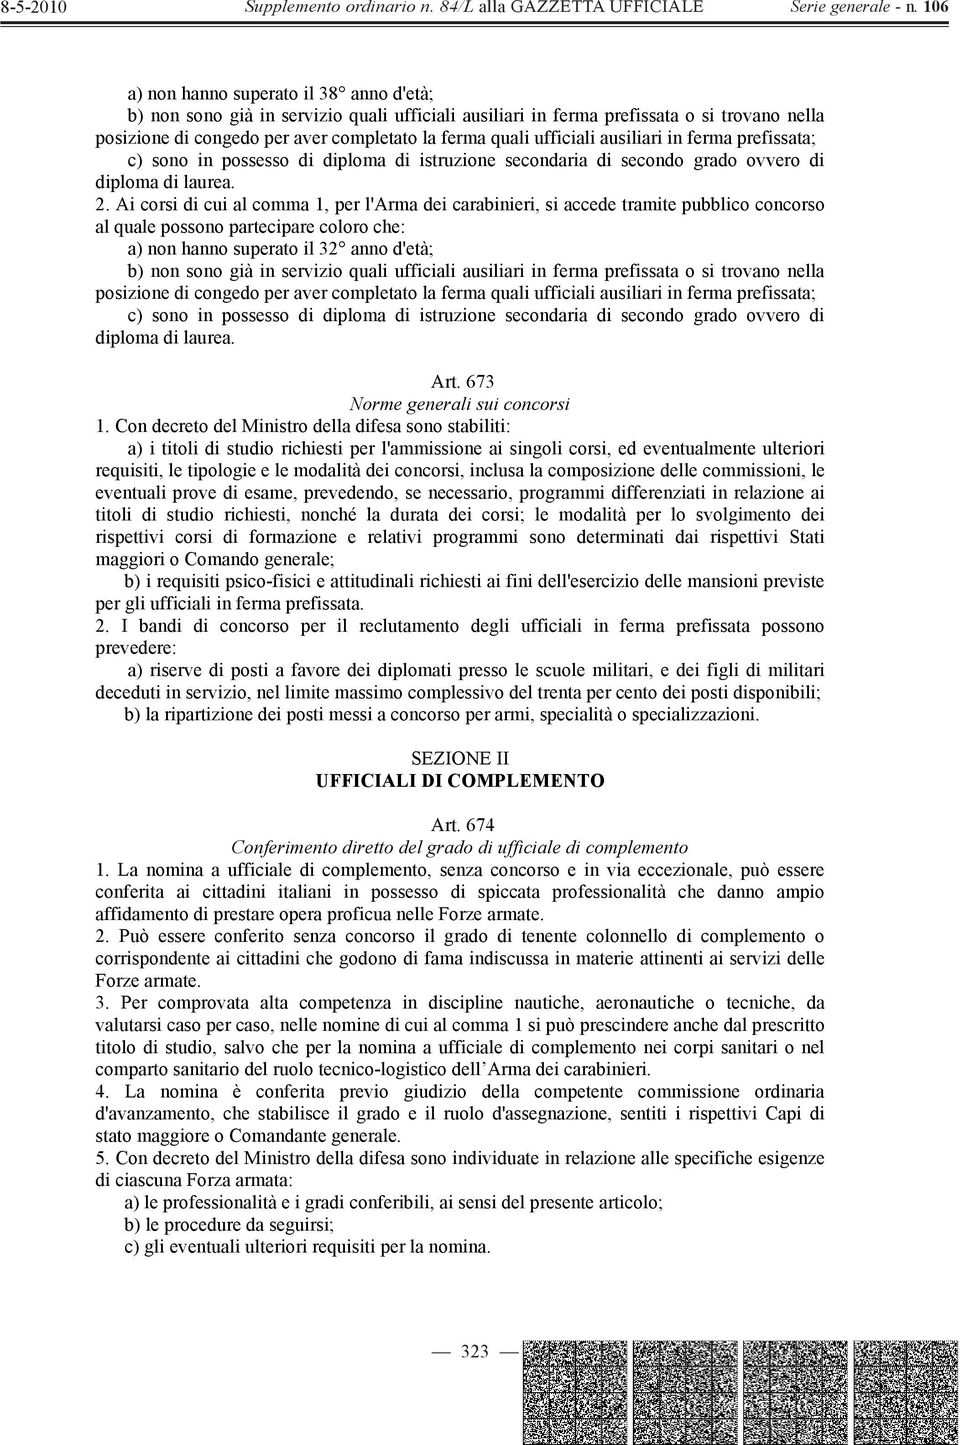 Ai corsi di cui al comma 1, per l'arma dei carabinieri, si accede tramite pubblico concorso al quale possono partecipare coloro che: a) non hanno superato il 32 anno d'età; b) non sono già in